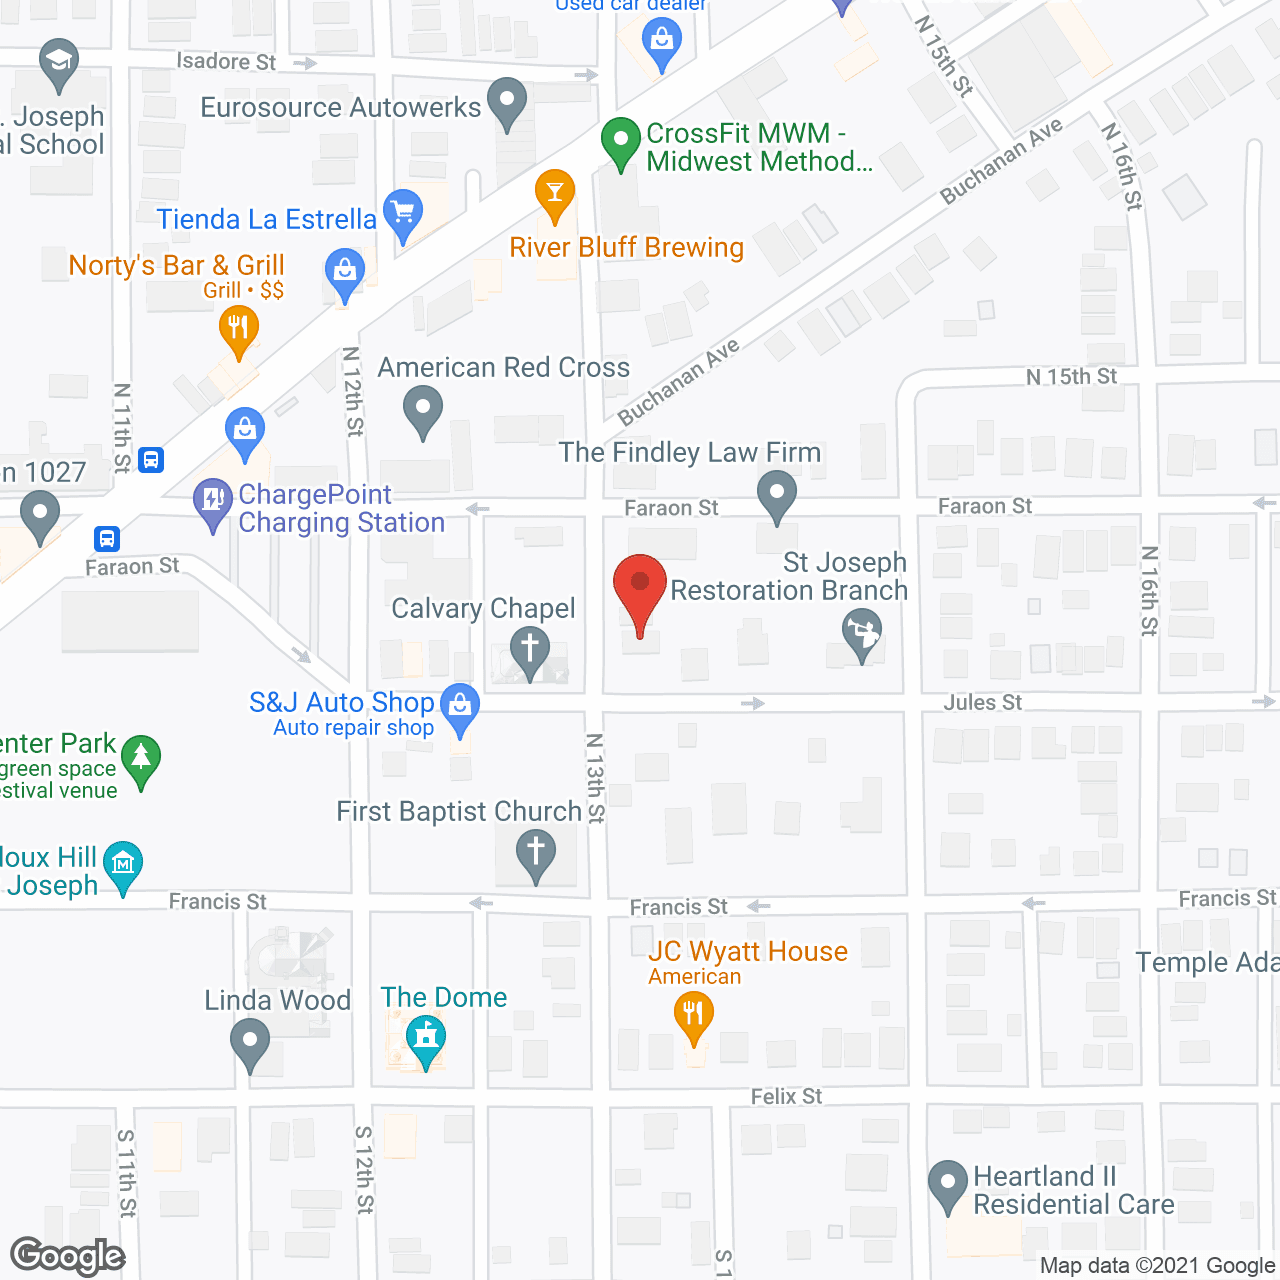 Harriett's Residential Care in google map